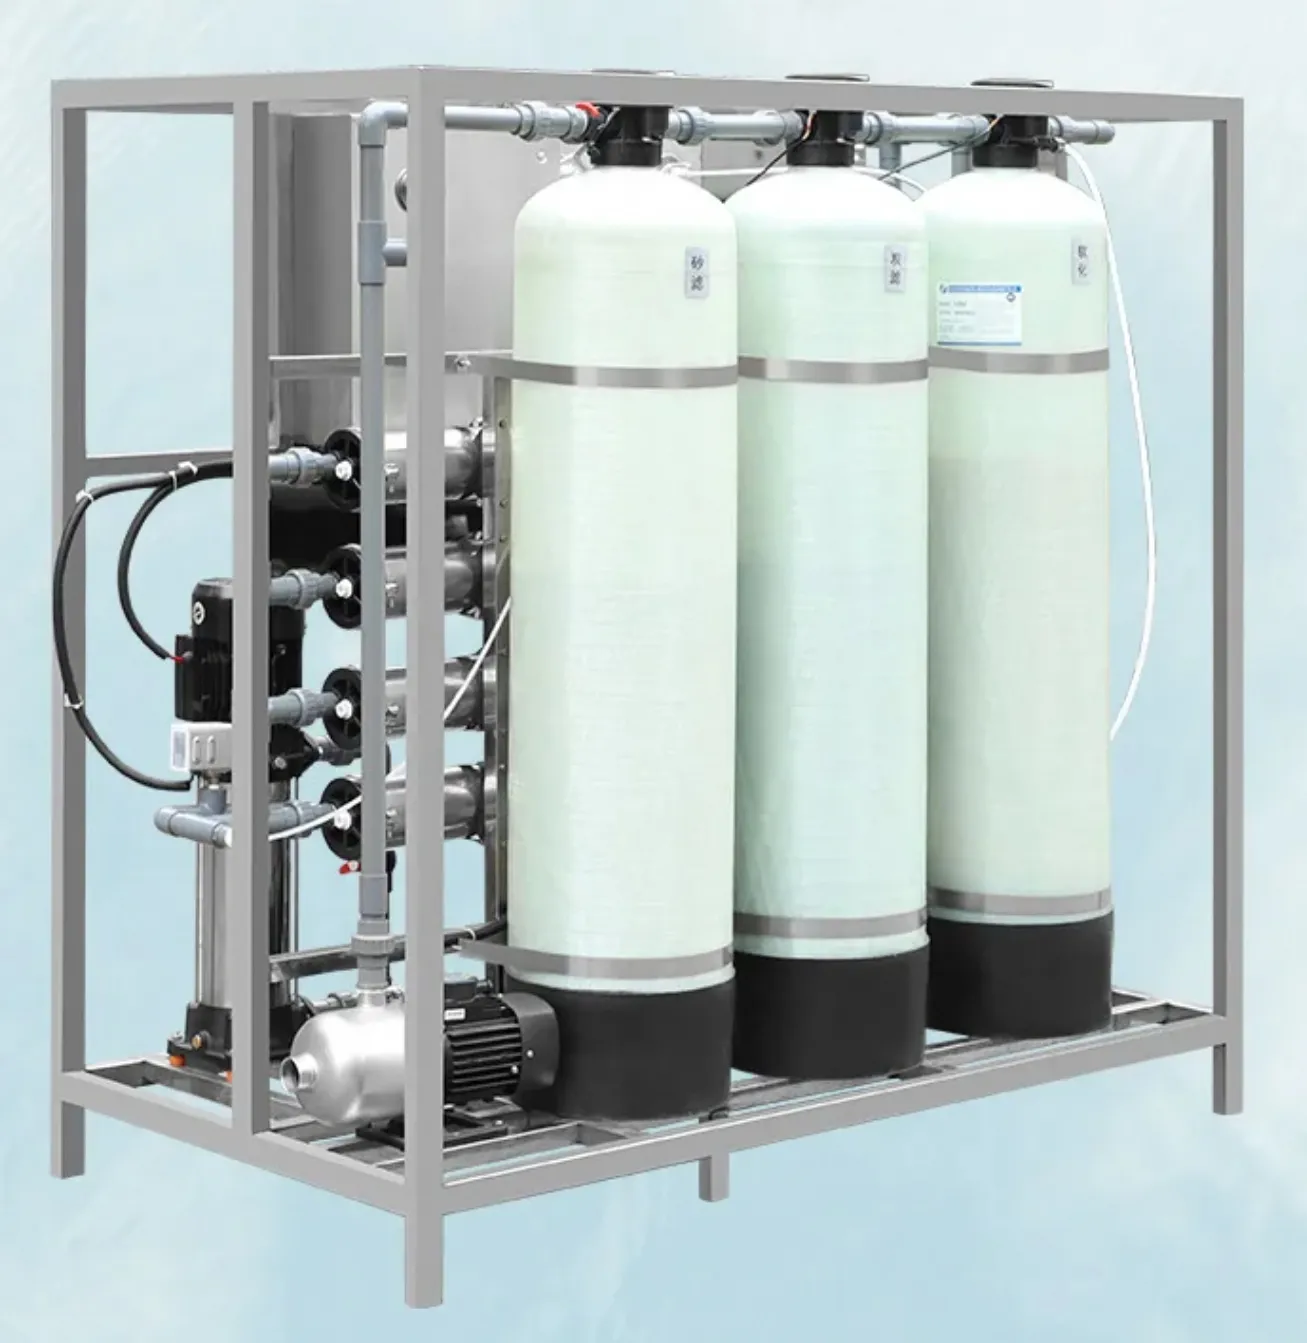 نظام تنقية المياه المعدنية بنظام التناضح بالتناضح، وحدات التناضح العكسي، ماكينة تجارية لمعالجة المياه للشرب